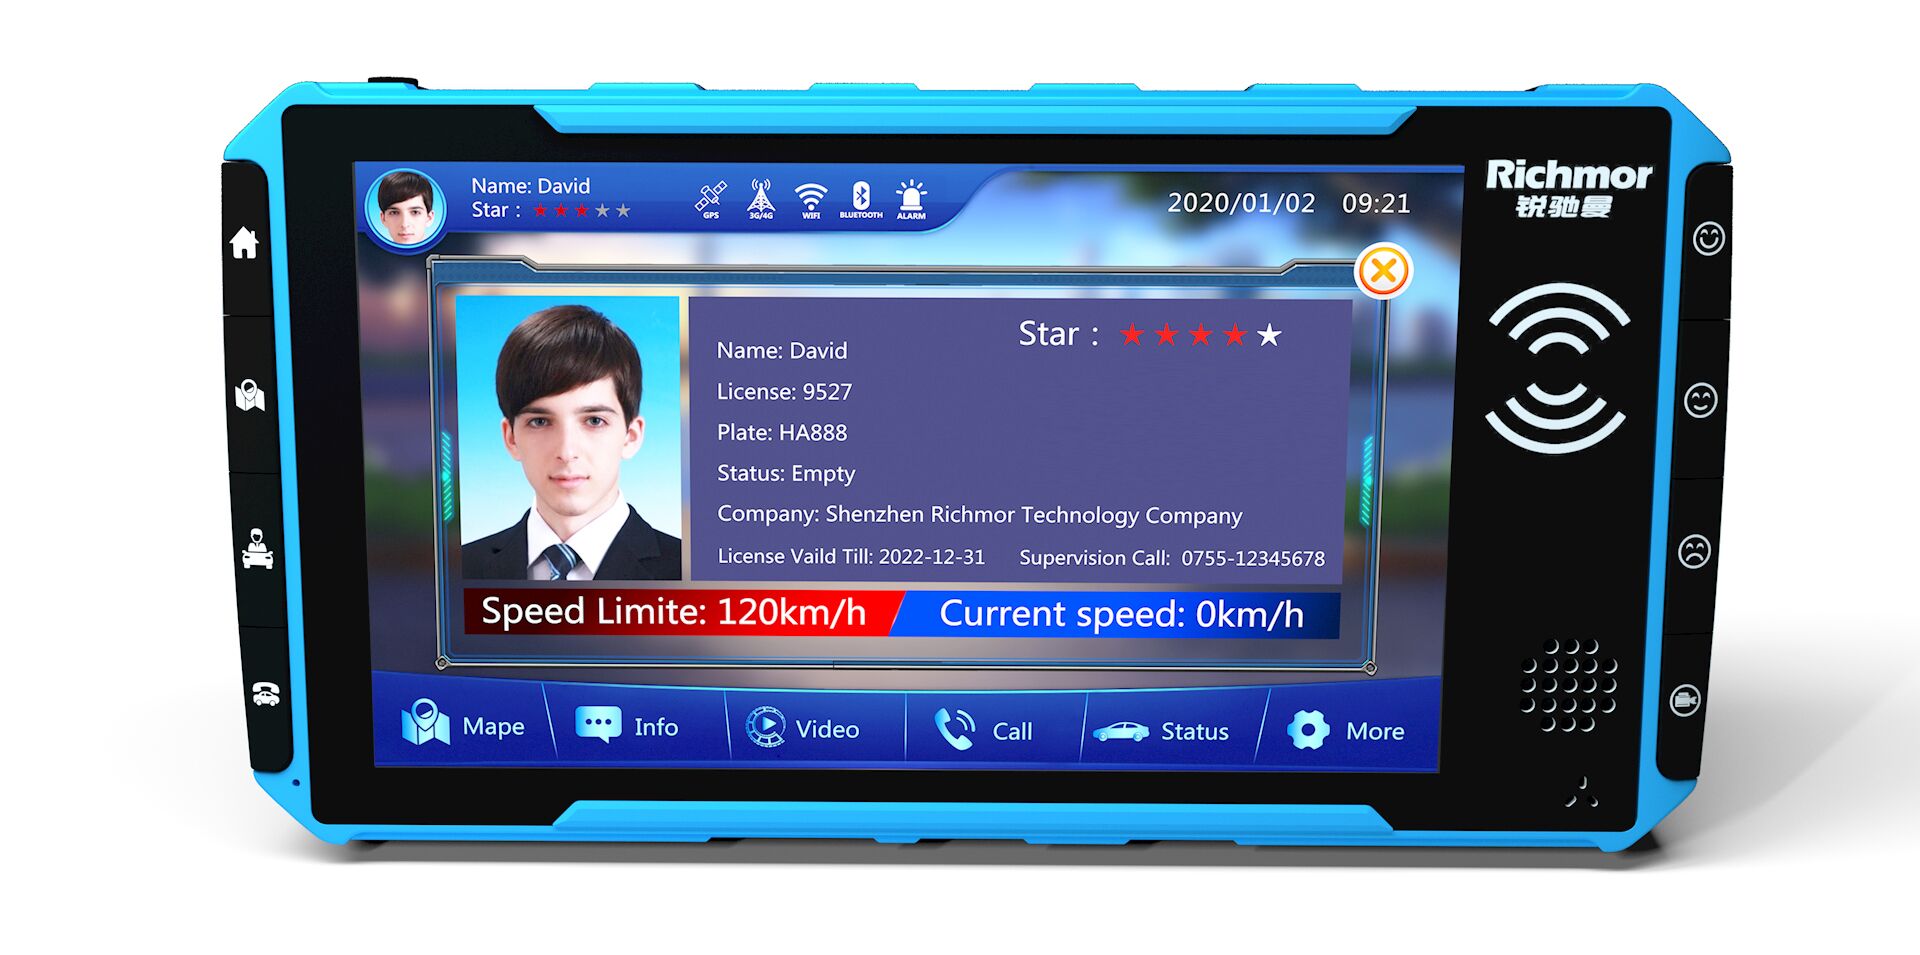 Monitor de pantalla táctil para la solución MDVR de terminal de datos móvil de taxi competitivo